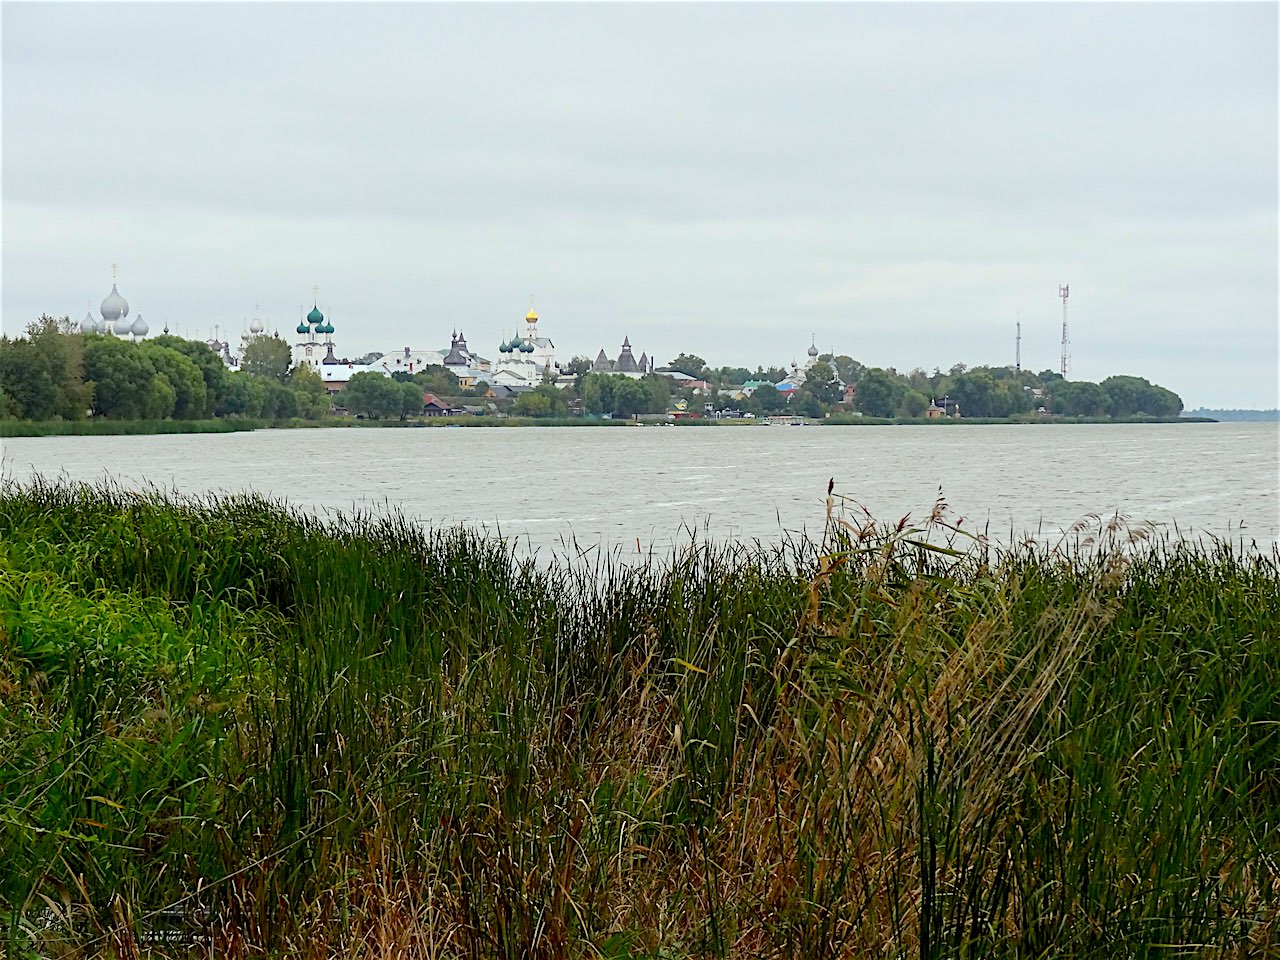 le kremlin de Rostov vu depuis le lac Nero